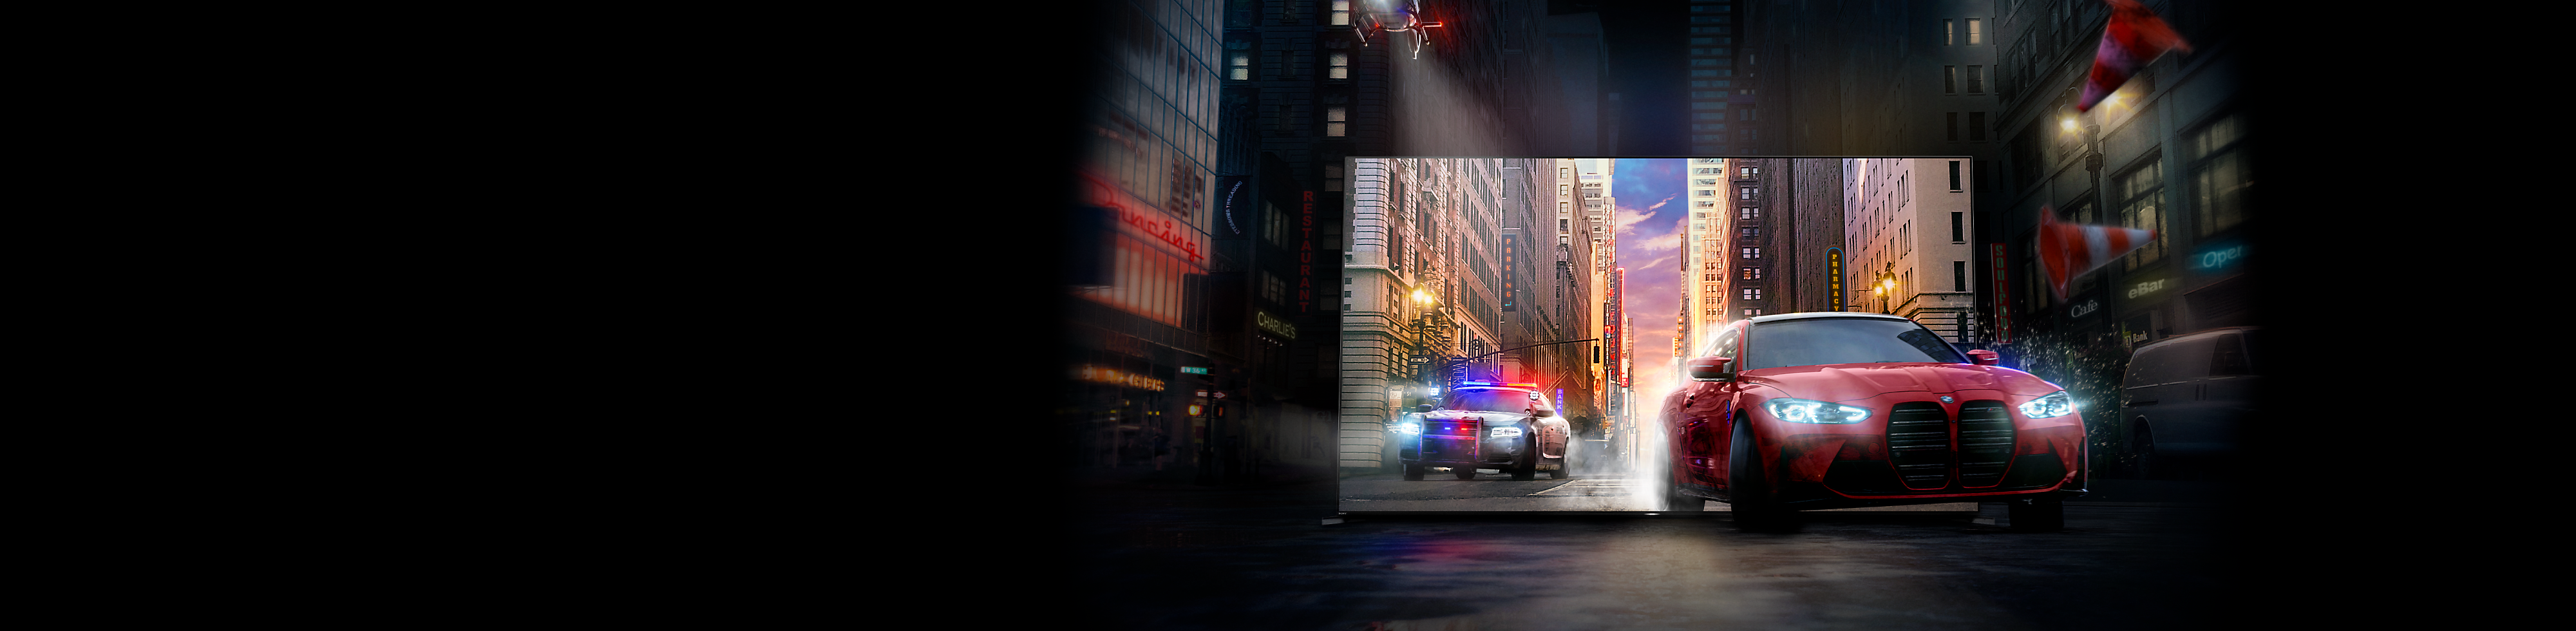 Красный автомобиль и преследующий его полицейский автомобиль выезжают из экрана телевизора BRAVIA на улицу города